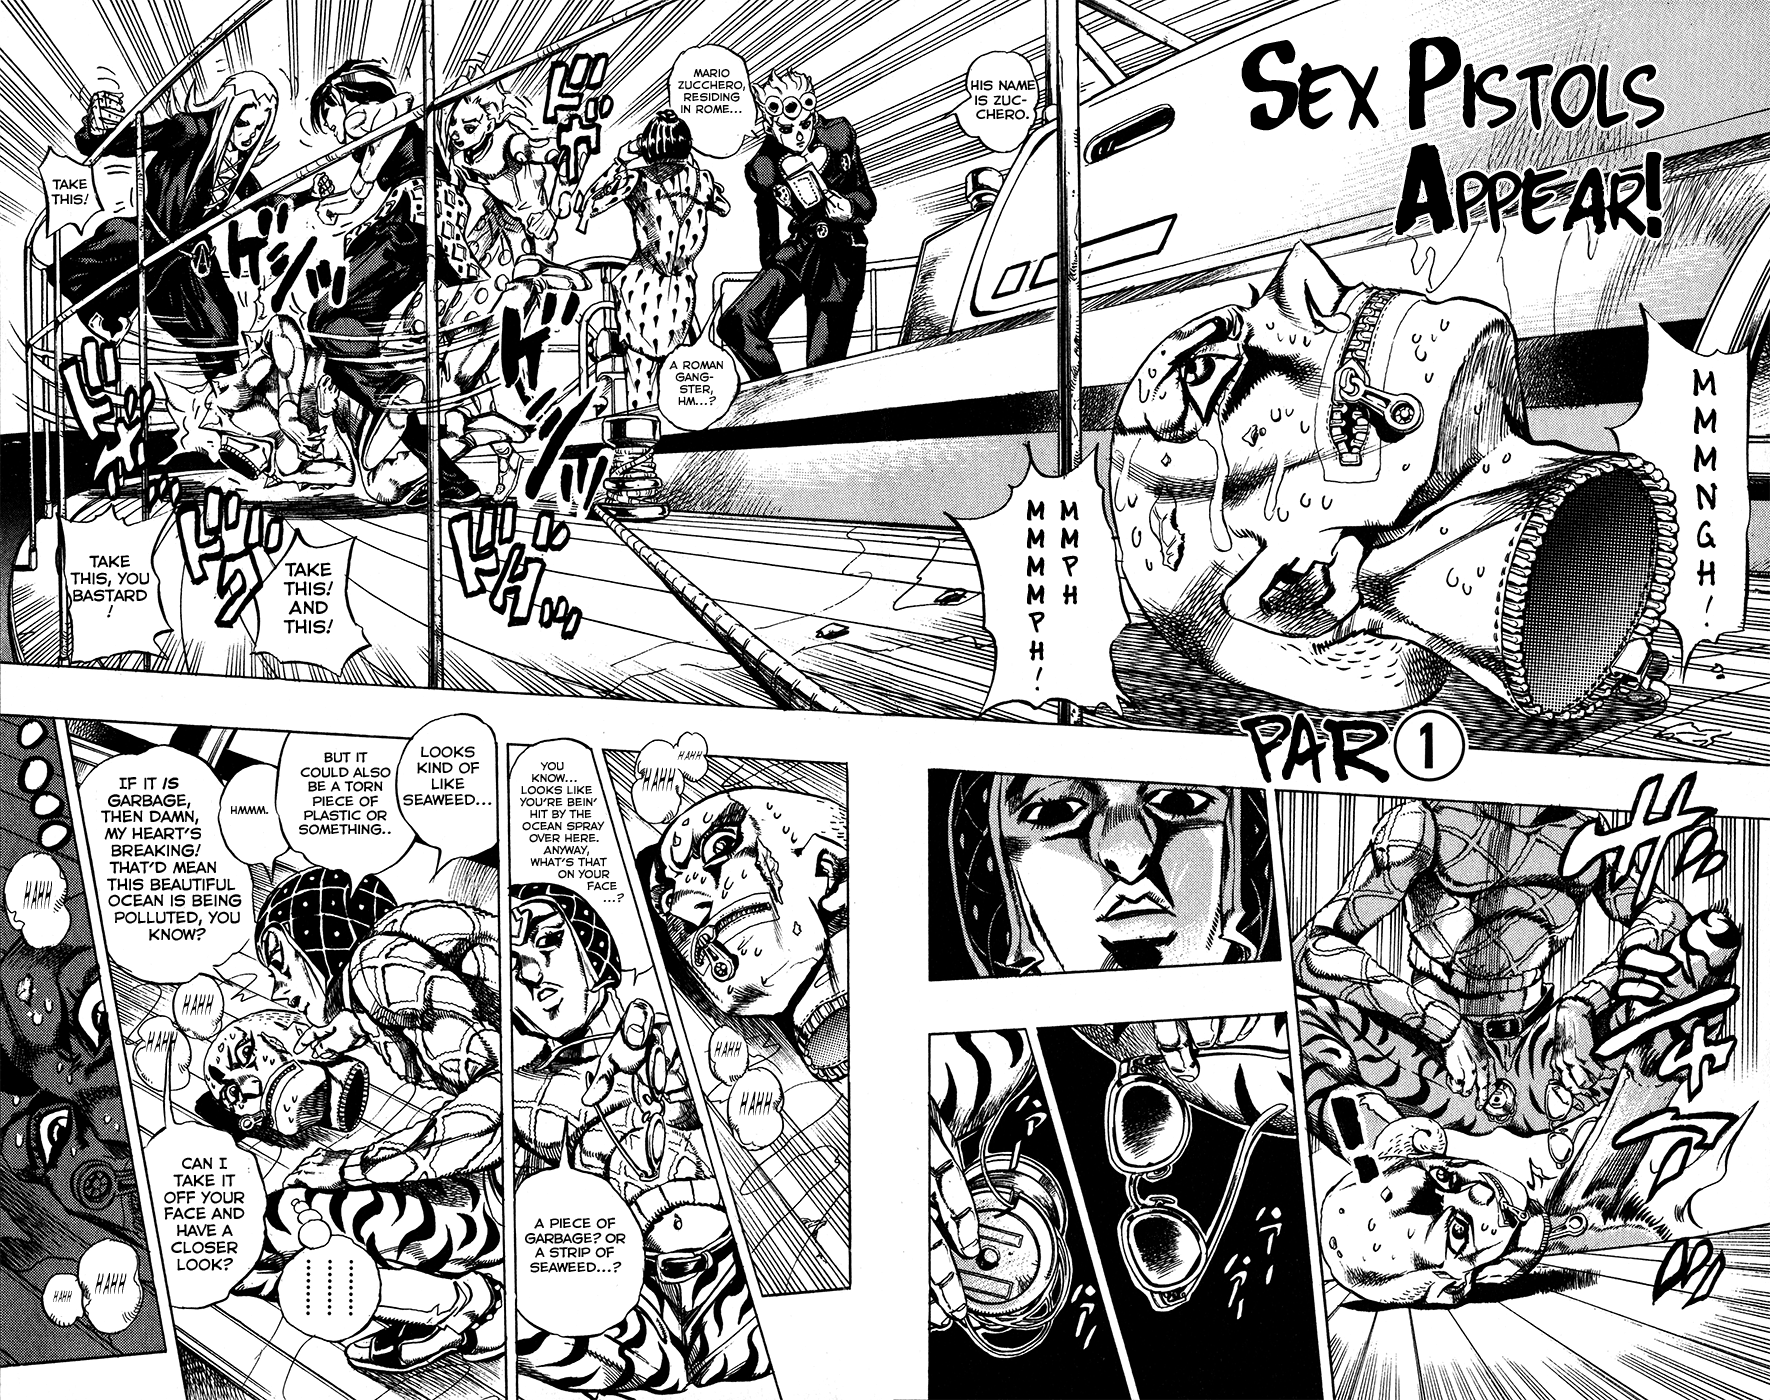 Jojo's Bizarre Adventure Part 5 - Vento Aureo Vol.3 Chapter 23: Sex Pistols Appear! Part 1 - Picture 2